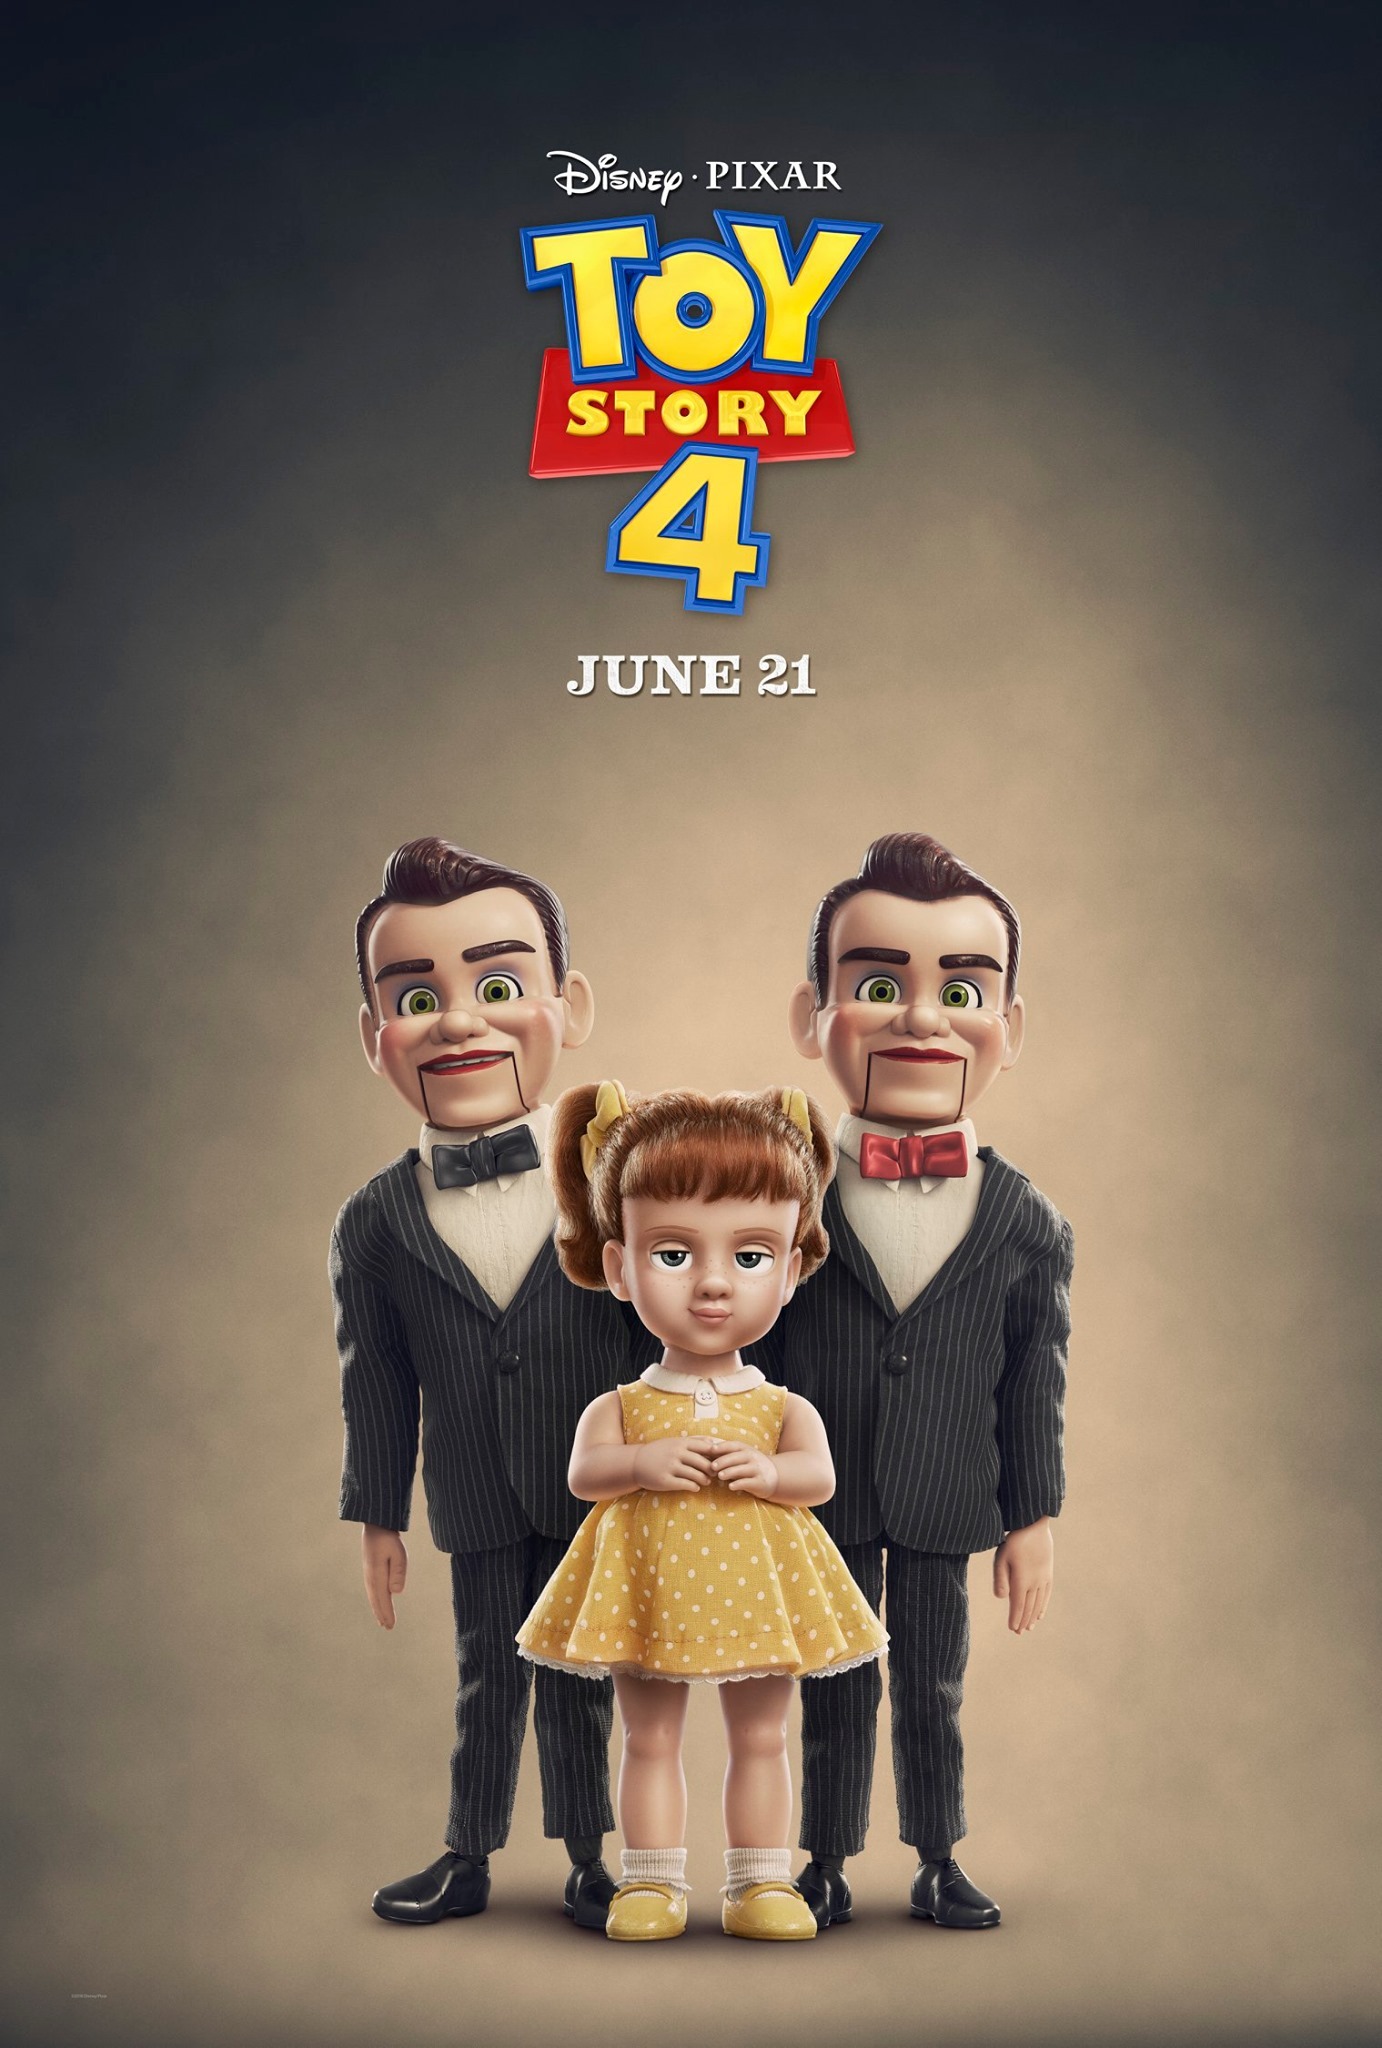 toy story 4 slappy doll